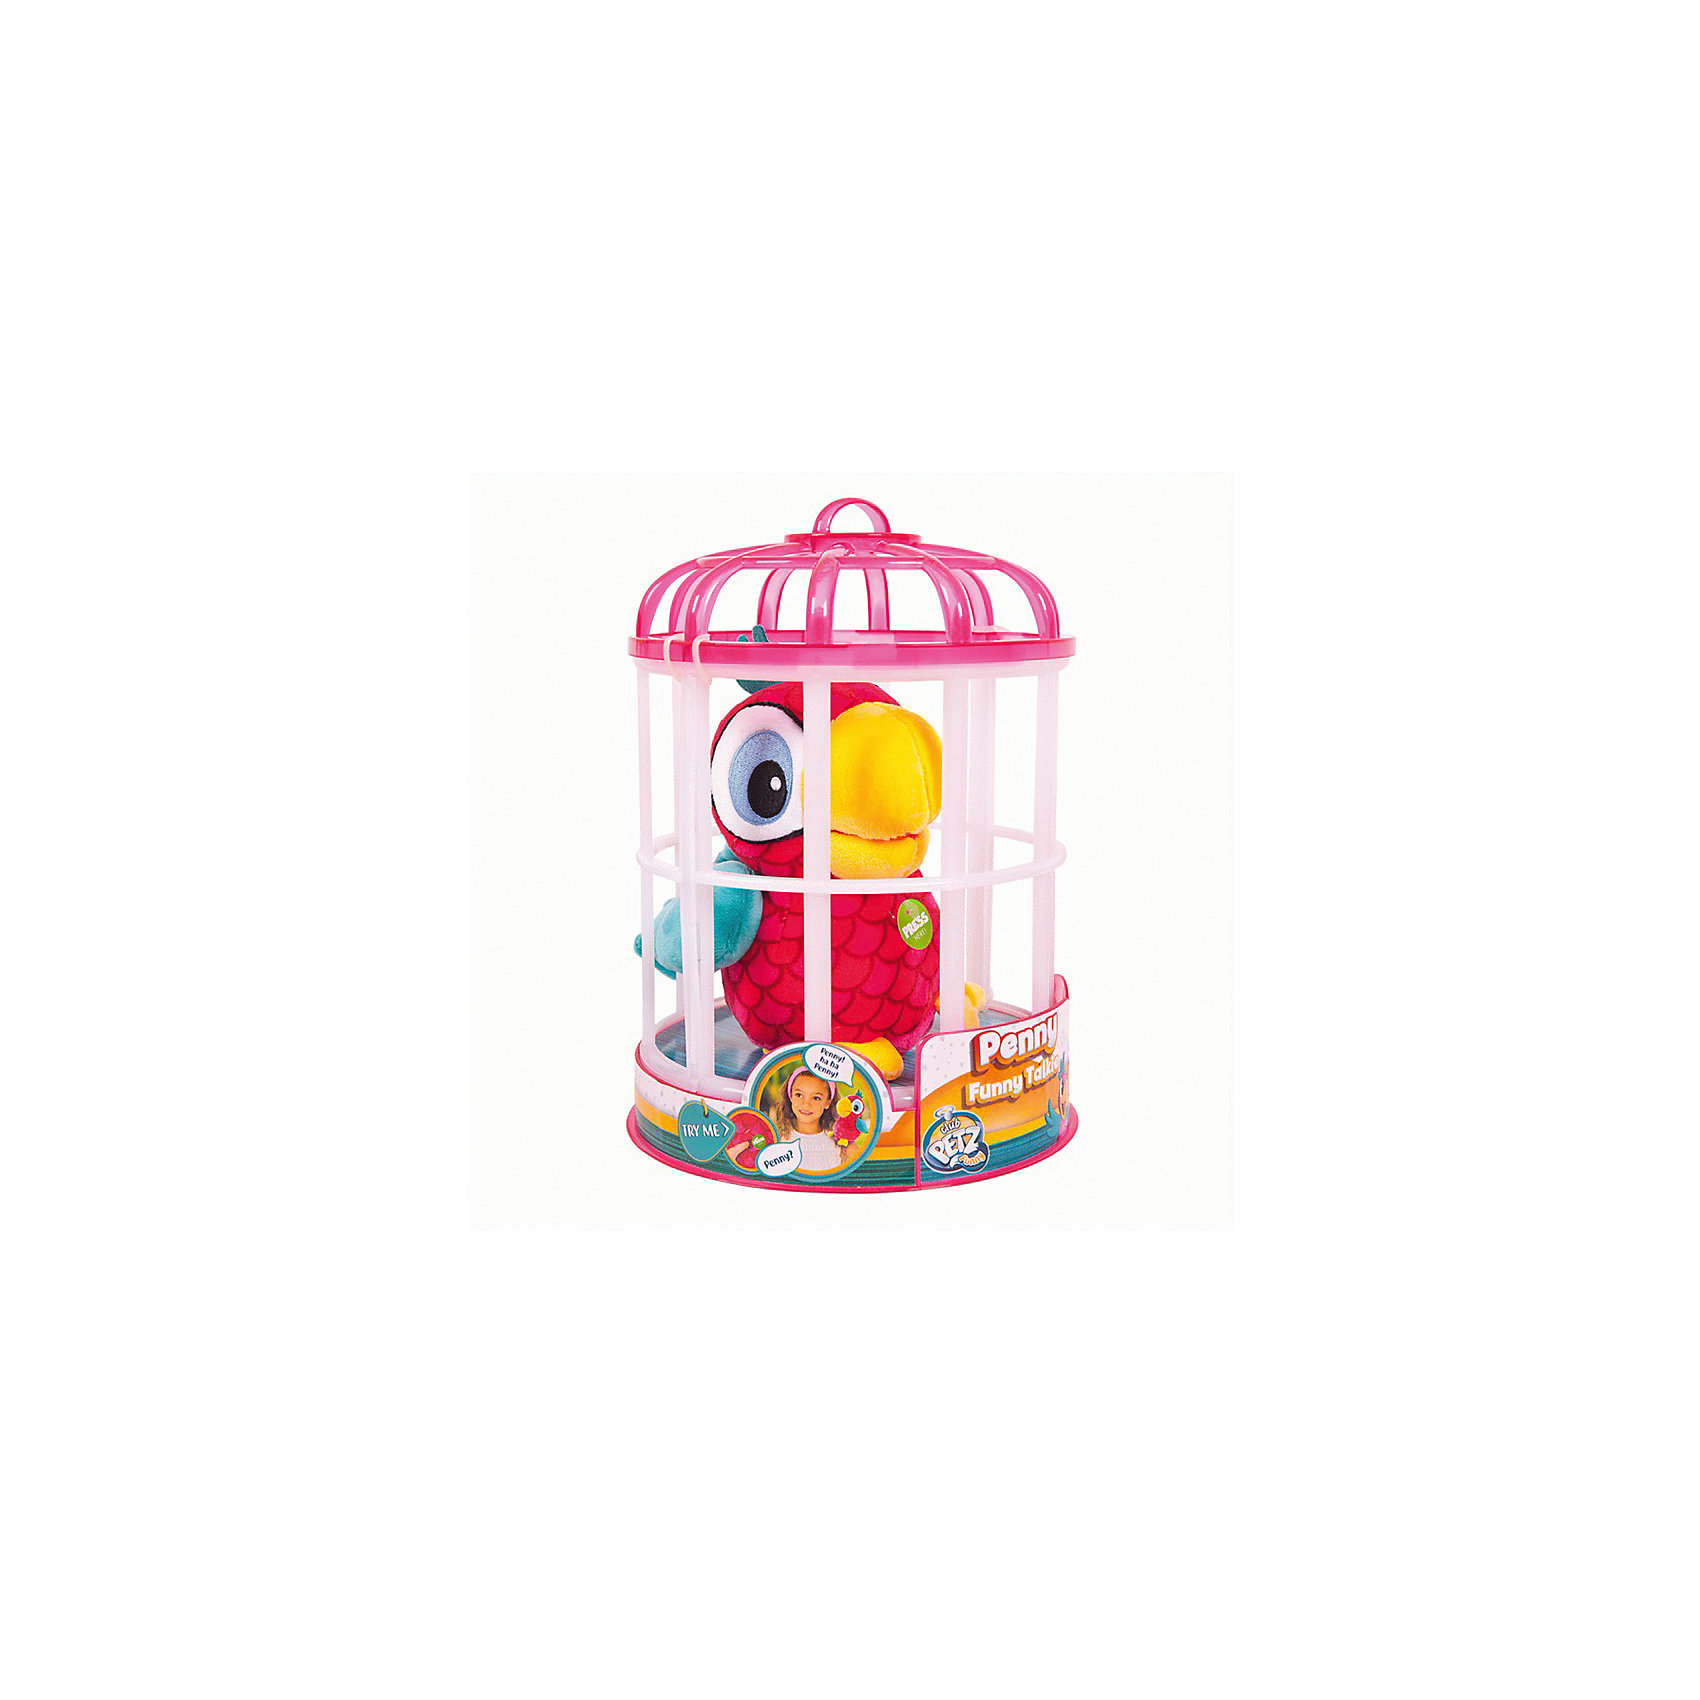 Интерактивная игрушка Попугай Пэнни IMC Toys 4443004